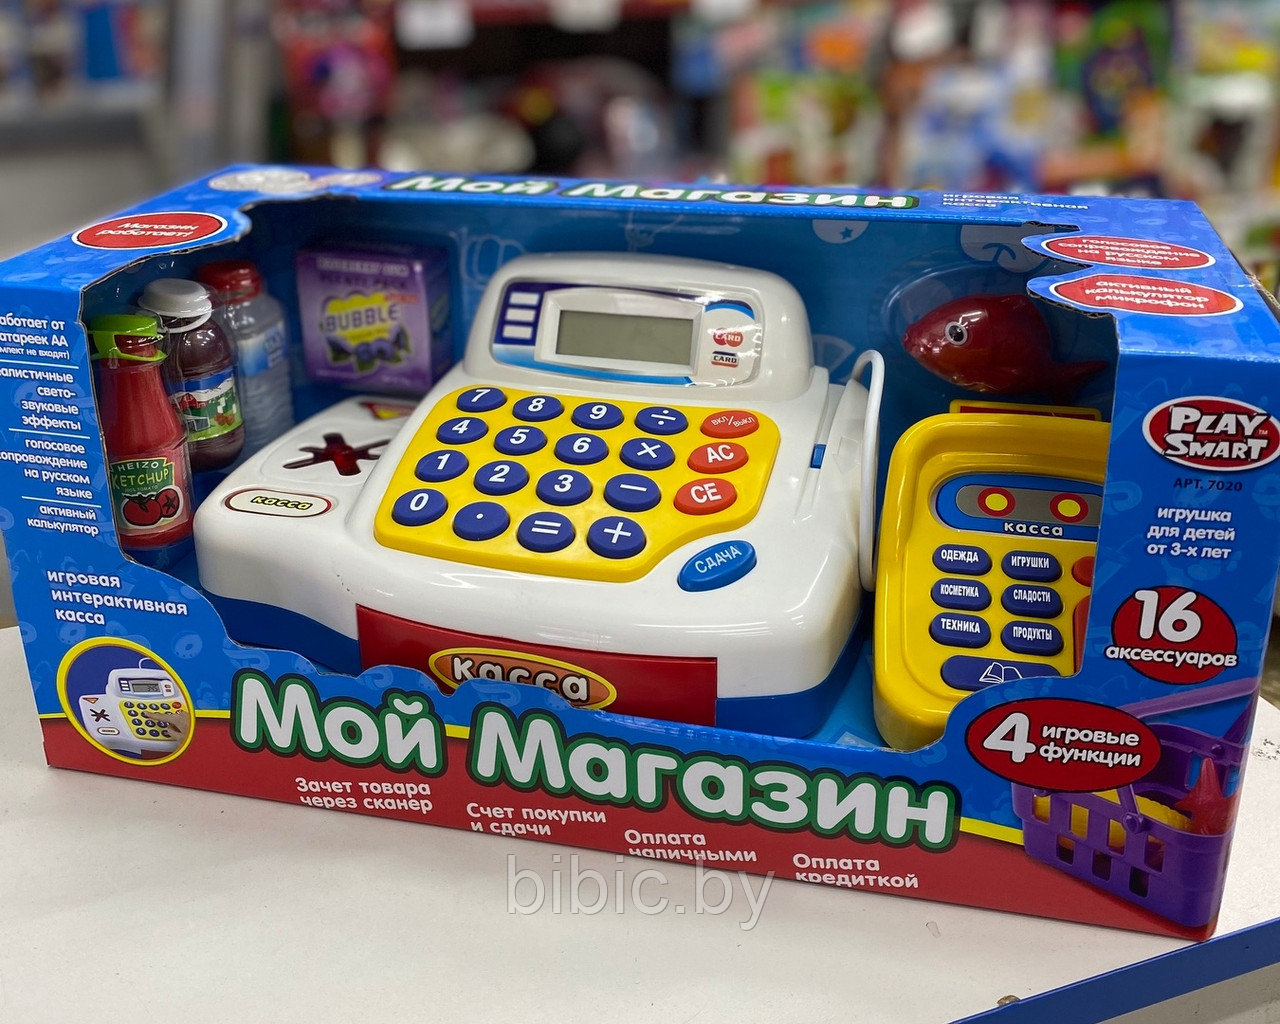 Детская игровая касса Мой Магазин Play Smart 7020, игрушечный кассовый аппарат